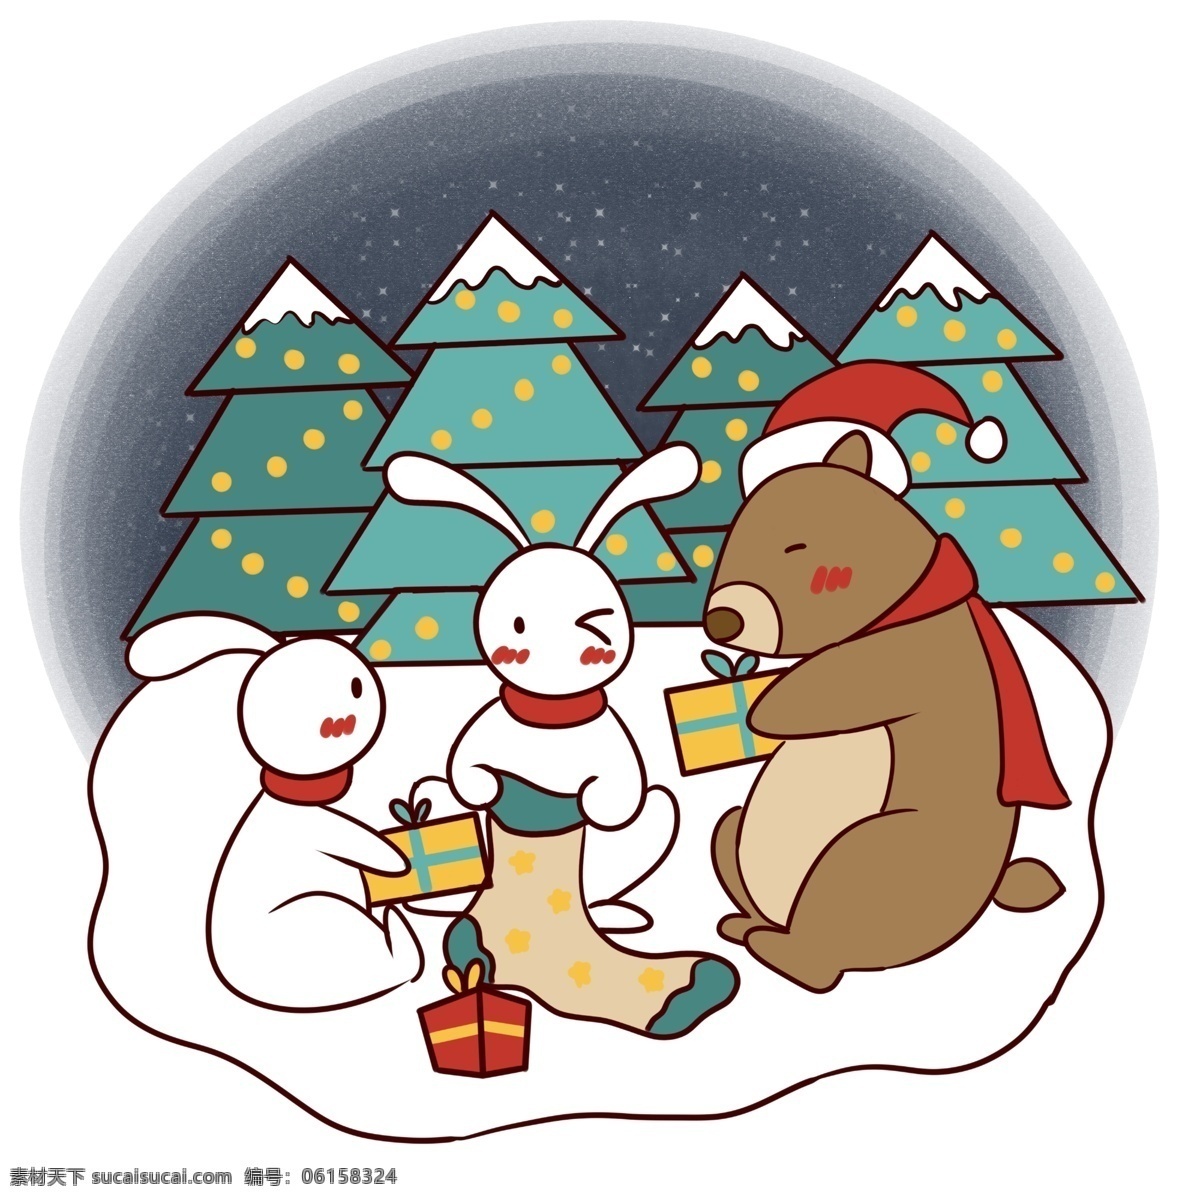 手绘 卡通 可爱 圣诞节 小 动物 矢量 免抠 圣诞快乐 圣诞夜 星空 圣诞树 小动物 礼物 雪地